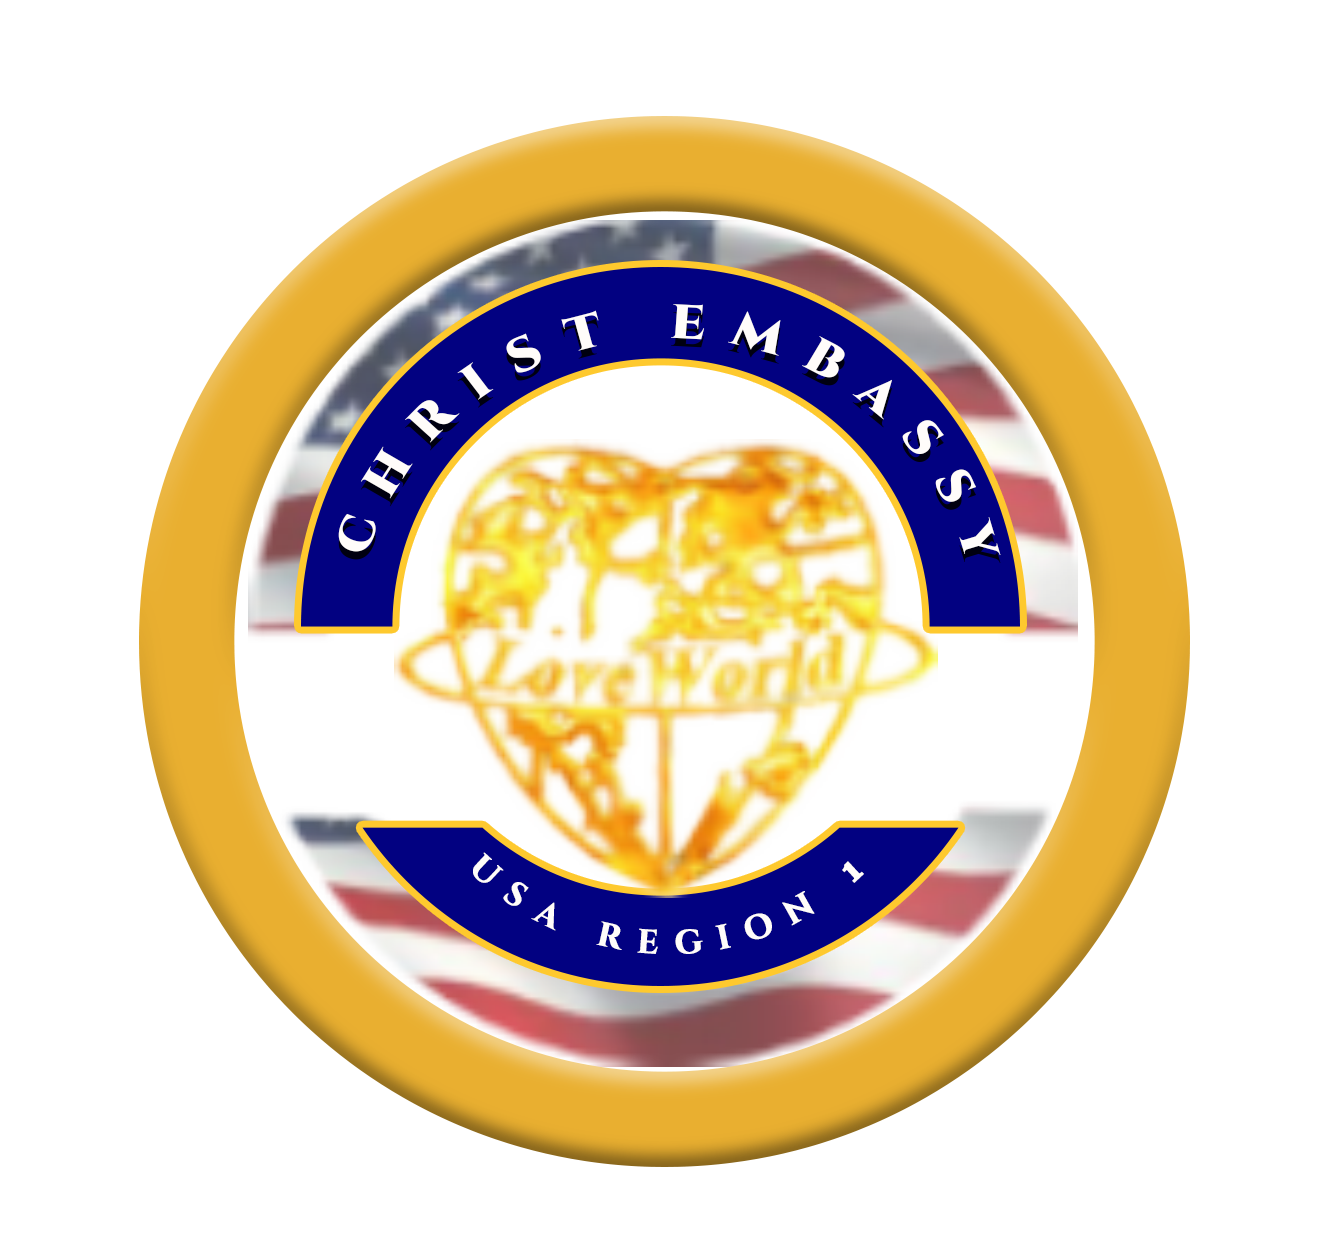 Christ Embassy USA REGION 1 logo